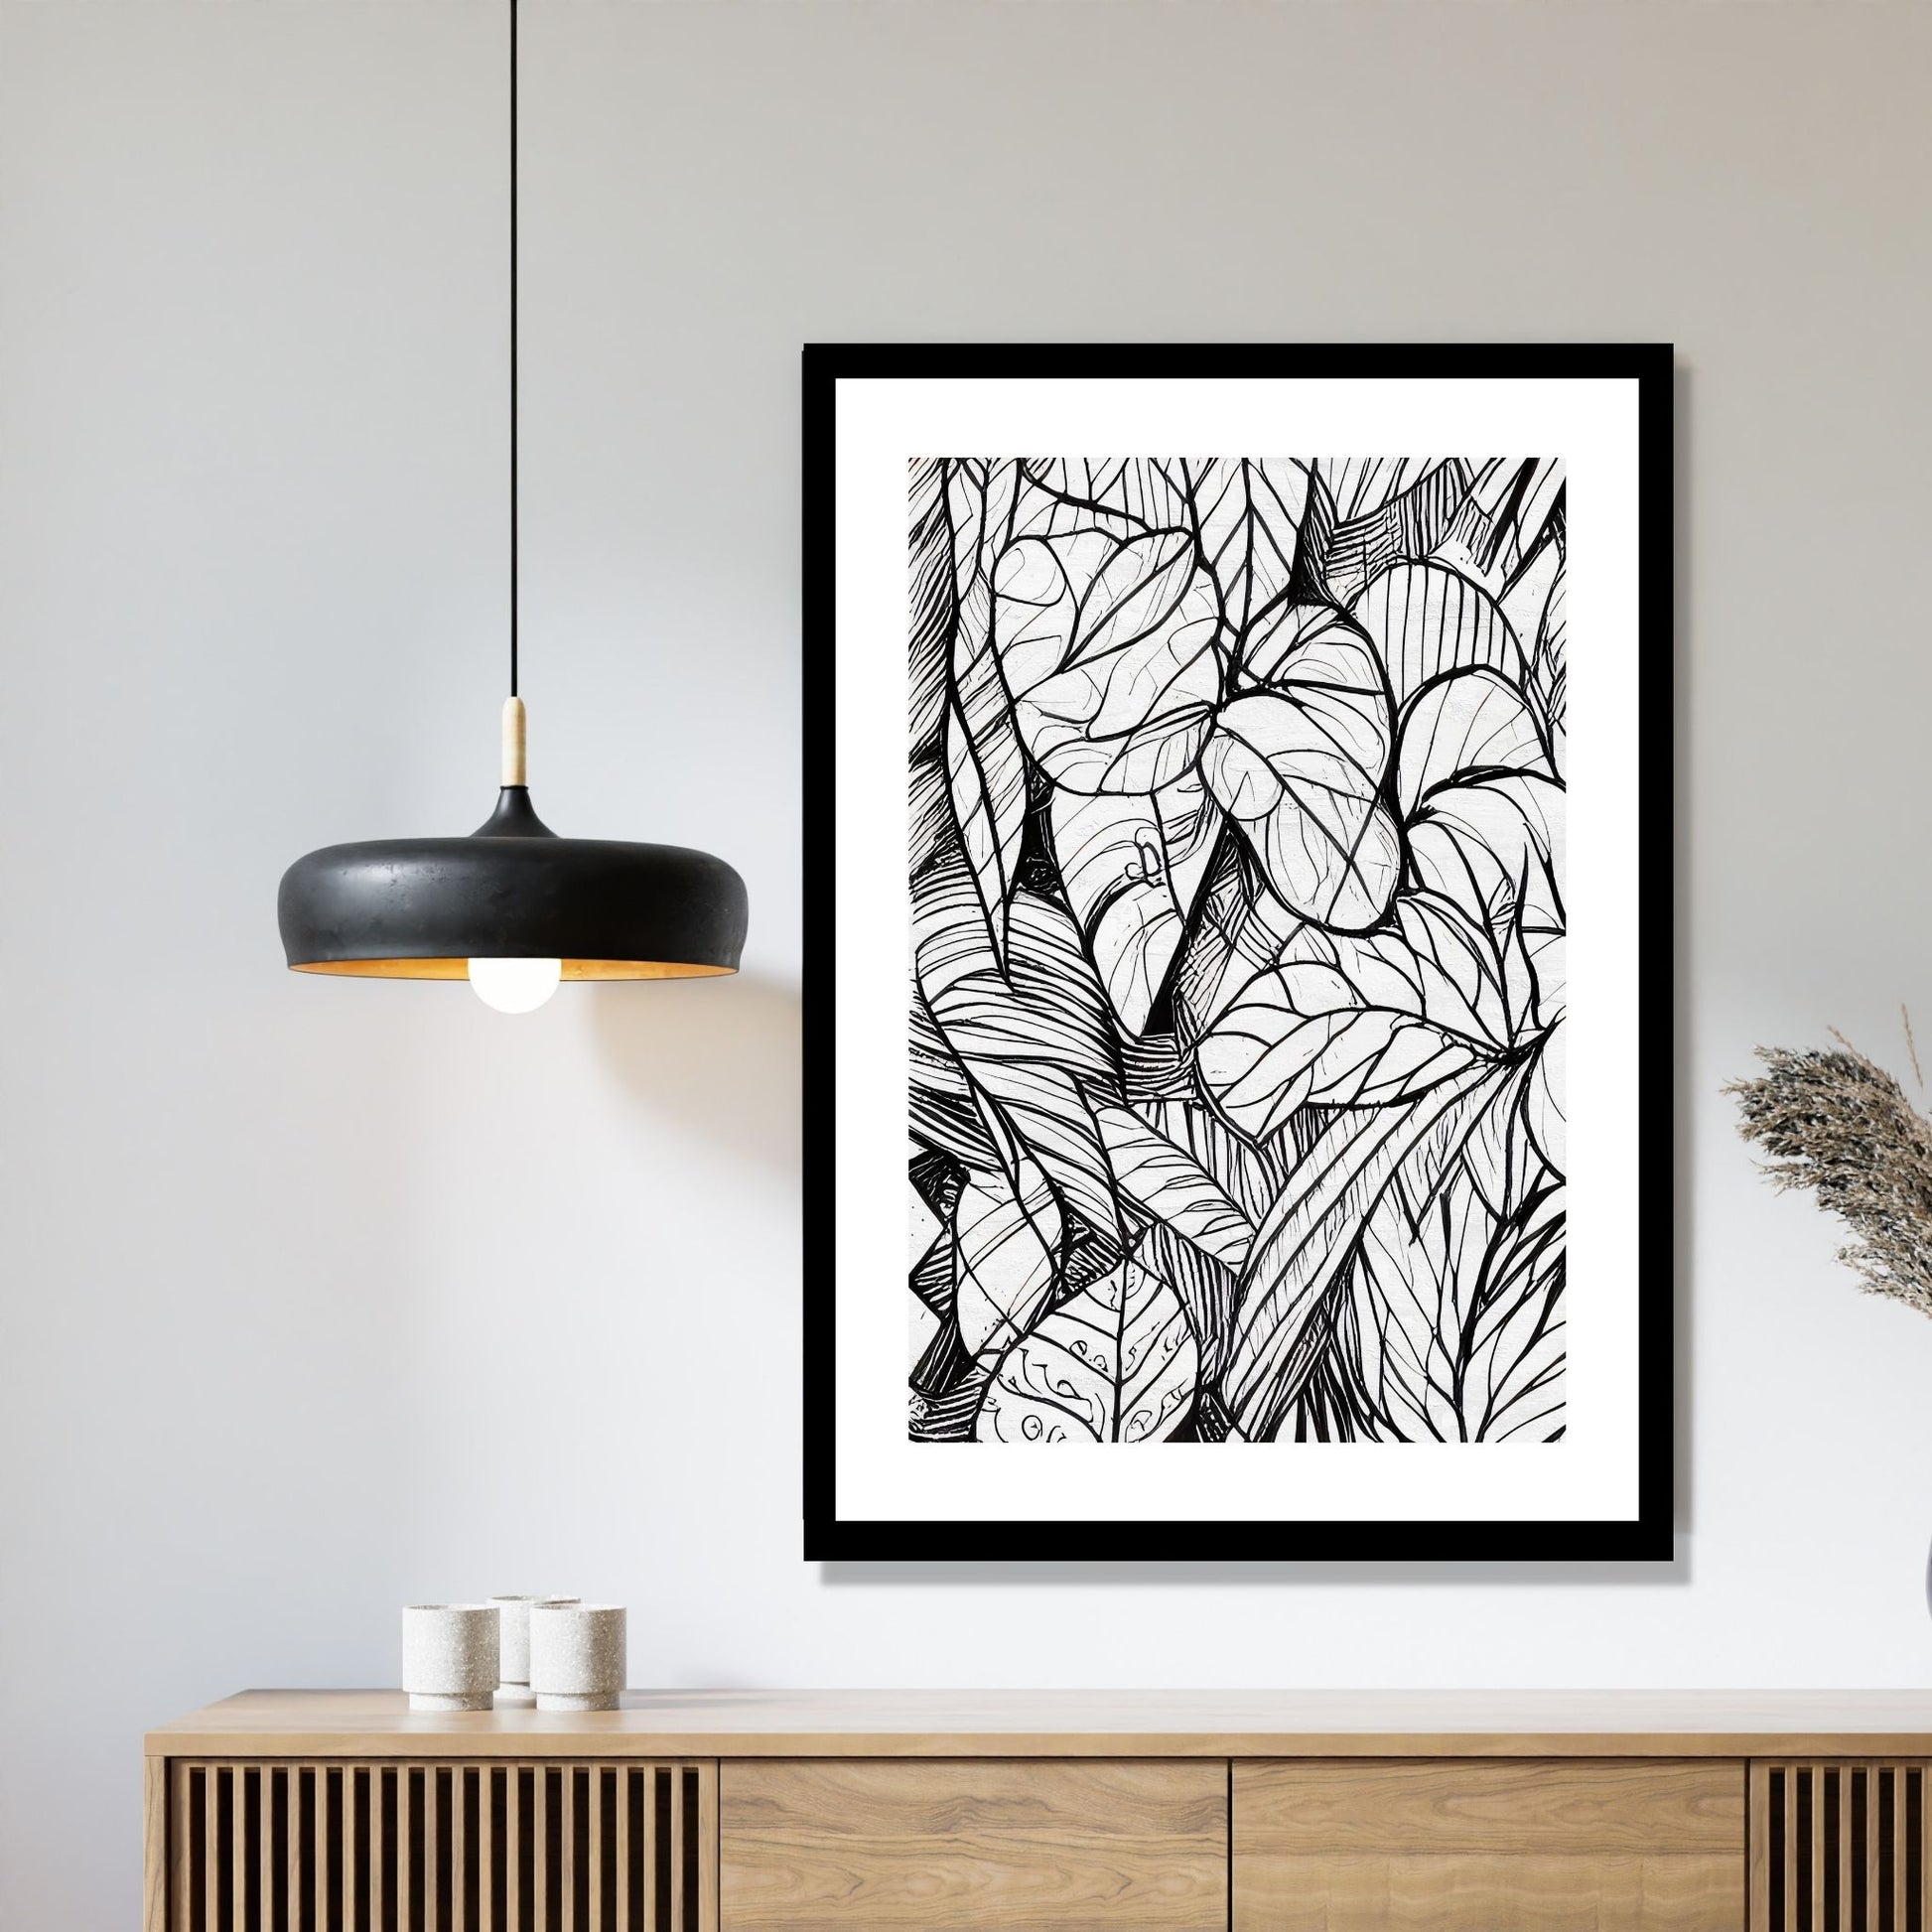 Miljøbildet viser en grafisk plakat i abstrakt, floralt mønster i sort-hvitt. Plakaten som har en dekorativ hvit kant, henger i en sort ramme over en skjenk i teak. Ved siden henger en sort lampe.